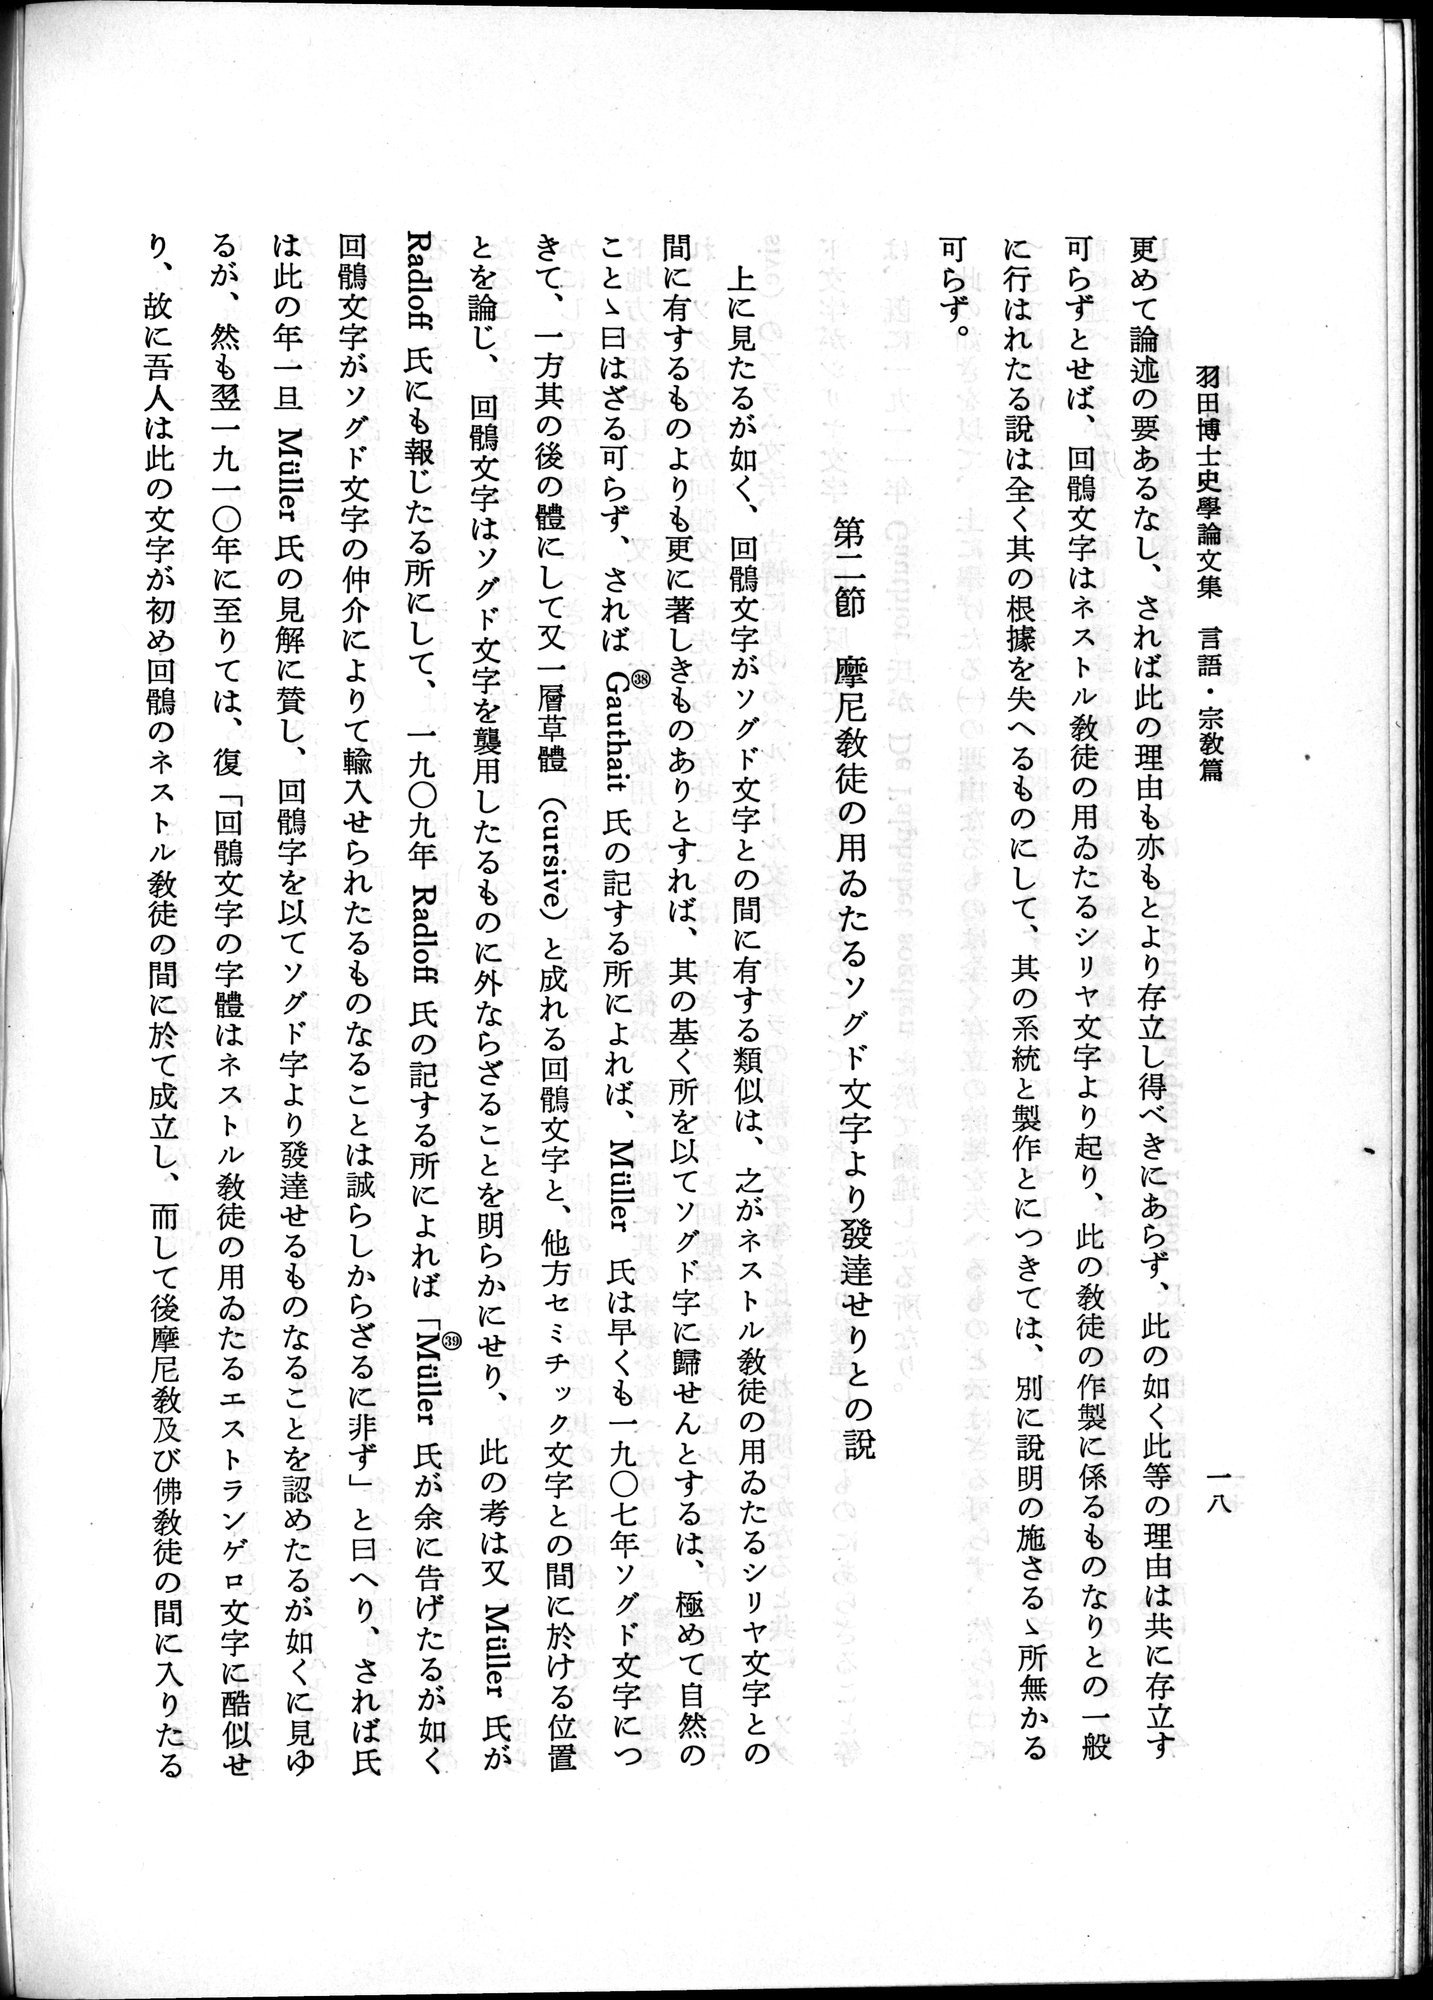 羽田博士史学論文集 : vol.2 / Page 68 (Grayscale High Resolution Image)